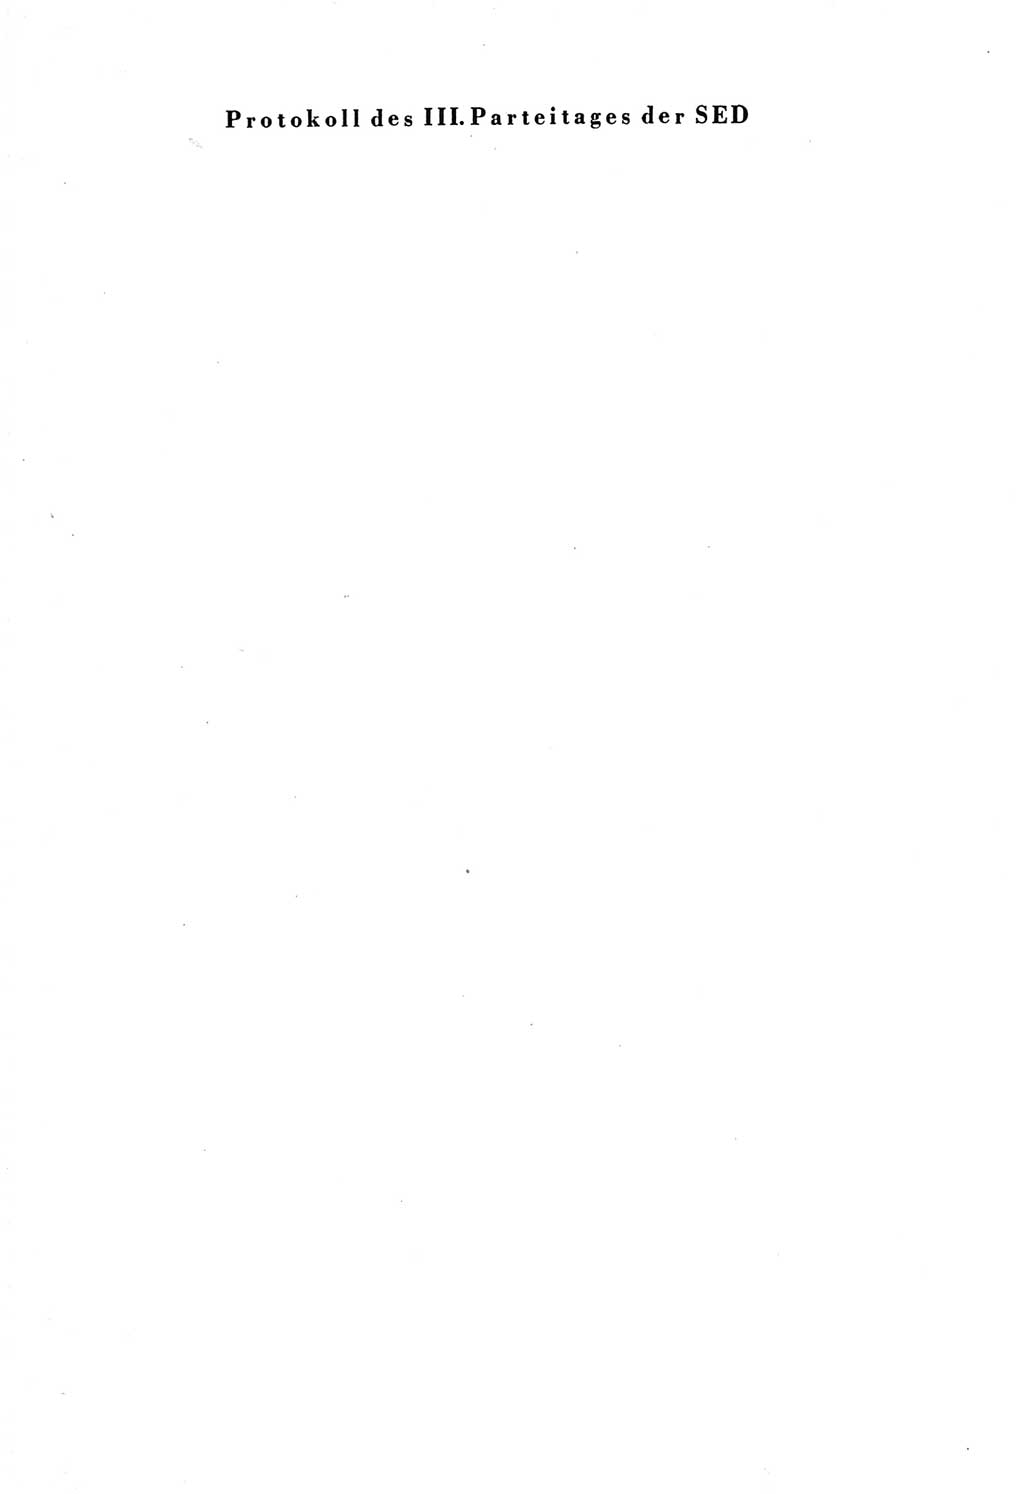 Protokoll der Verhandlungen des Ⅲ. Parteitages der Sozialistischen Einheitspartei Deutschlands (SED) [Deutsche Demokratische Republik (DDR)] 1950, Band 2, Seite 1 (Prot. Verh. Ⅲ. PT SED DDR 1950, Bd. 2, S. 1)